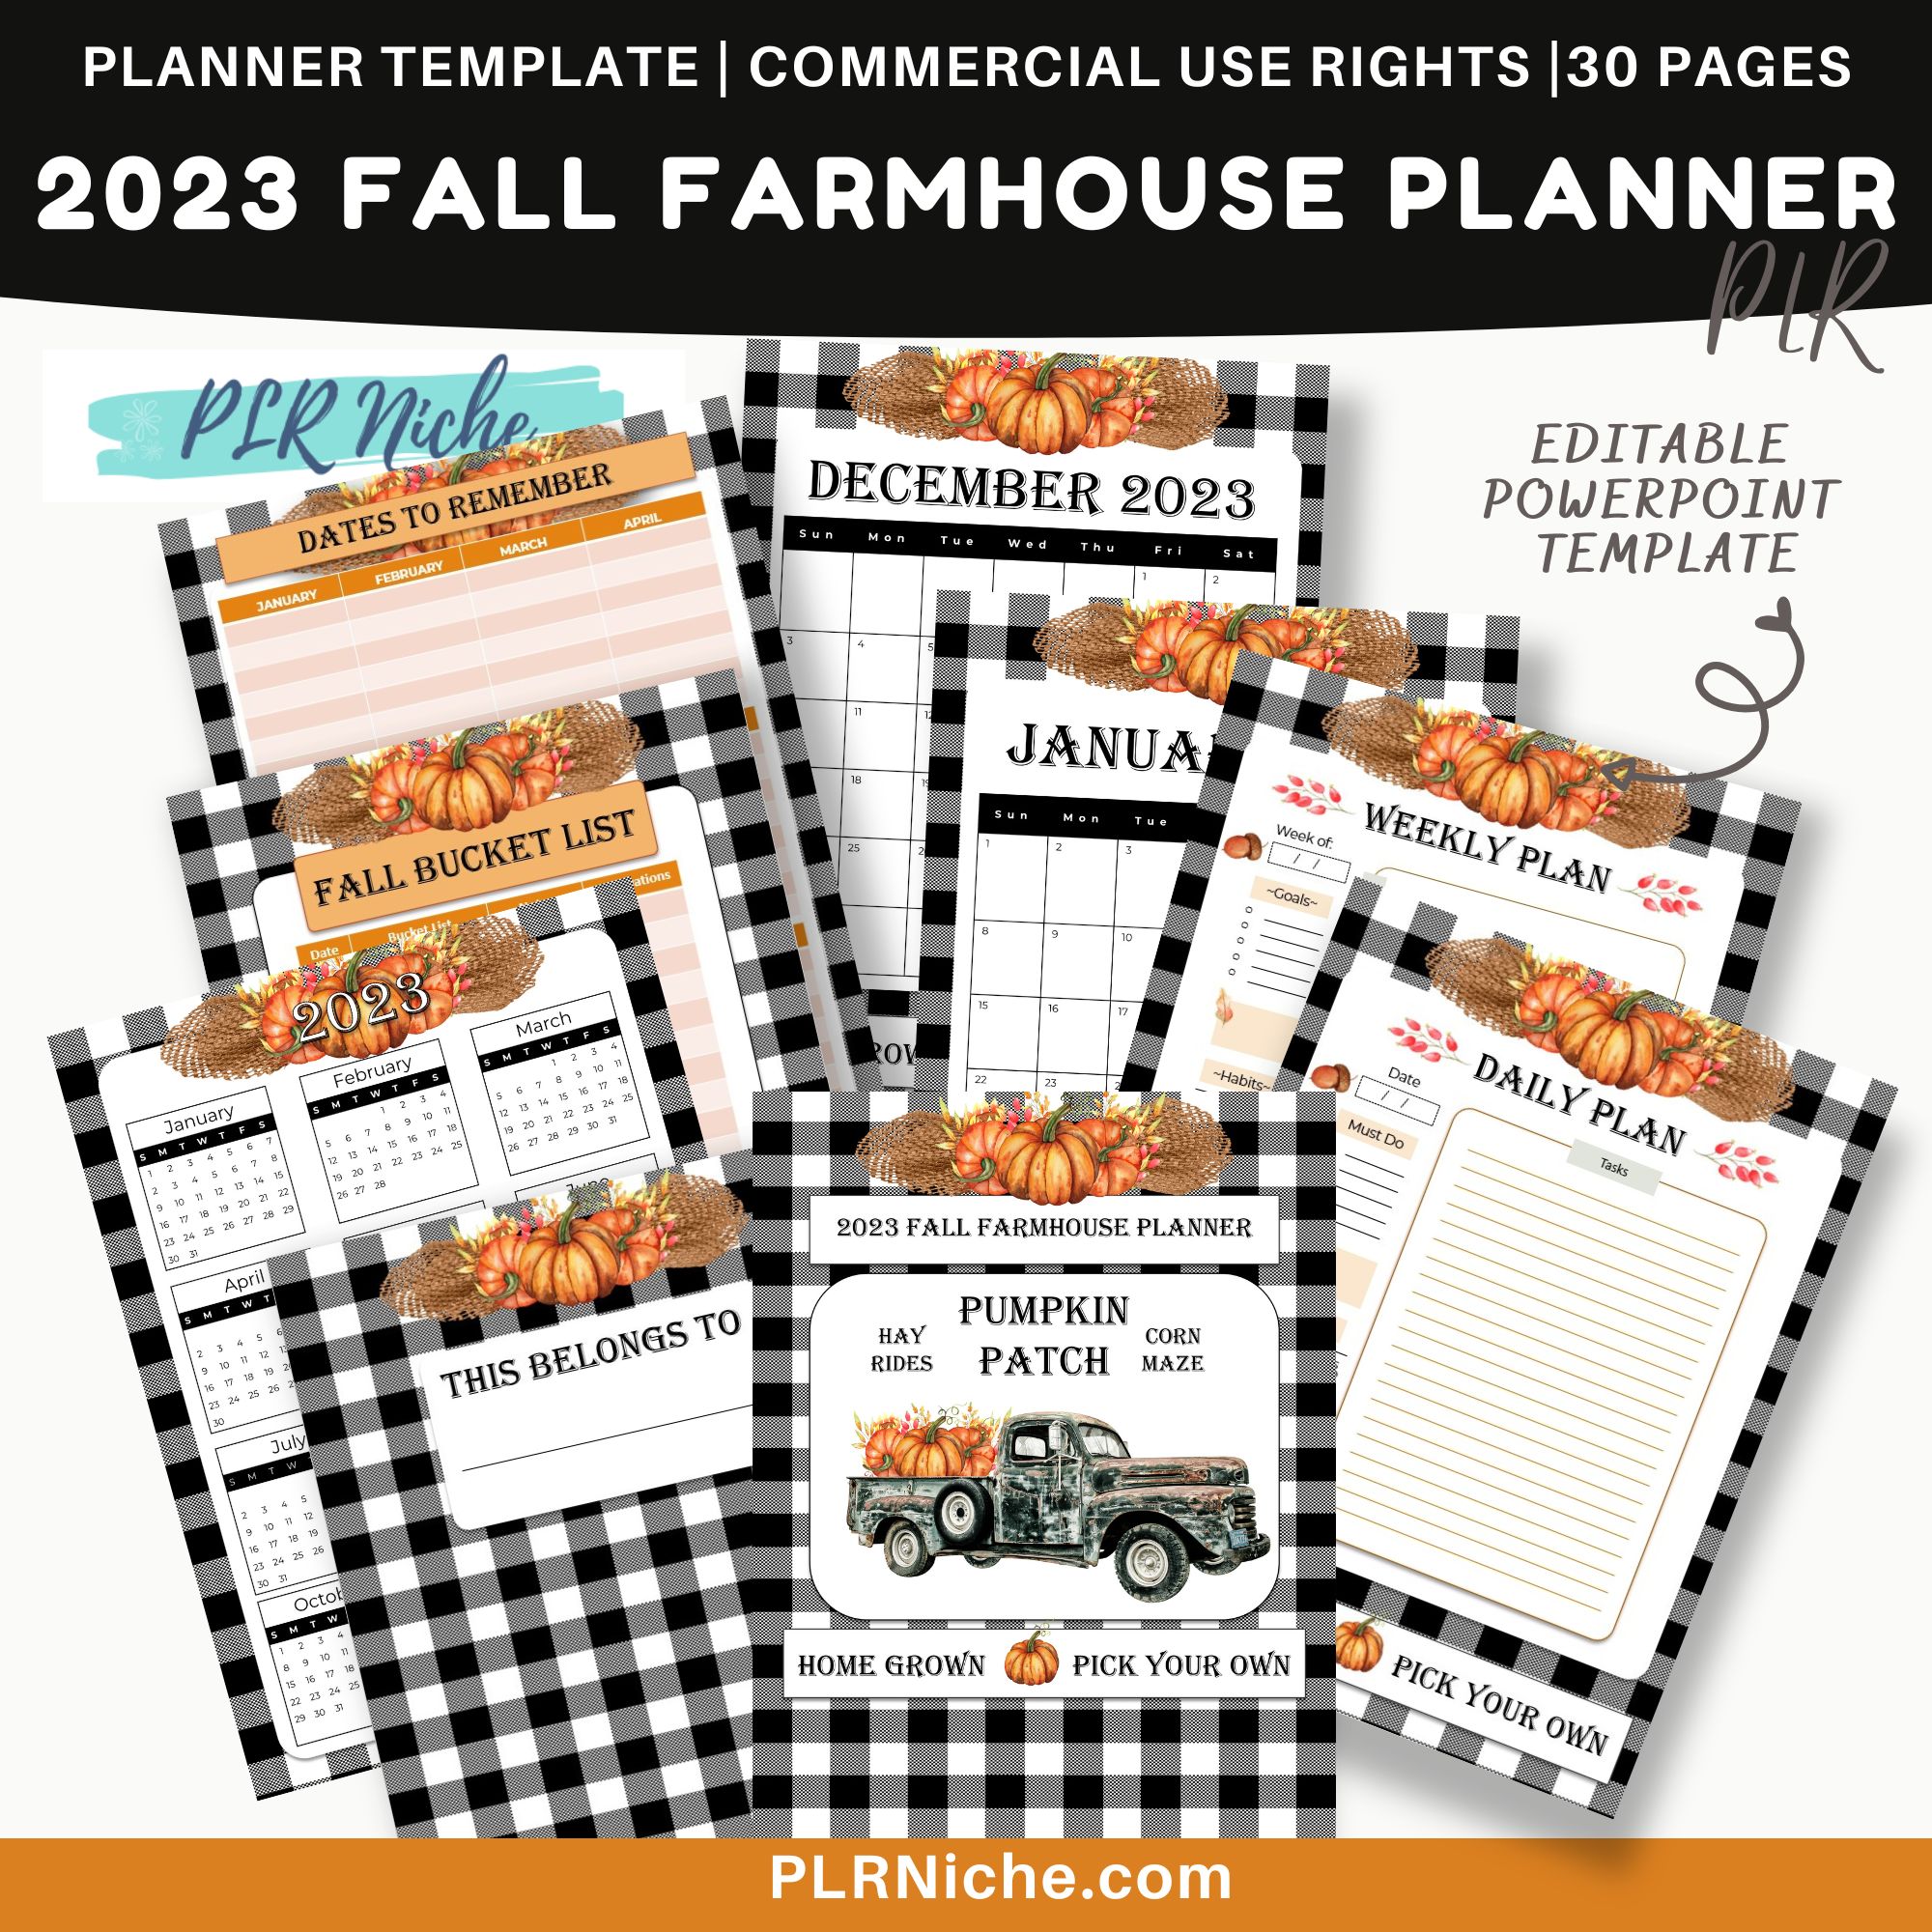 2023 Fall Farmhouse Planner